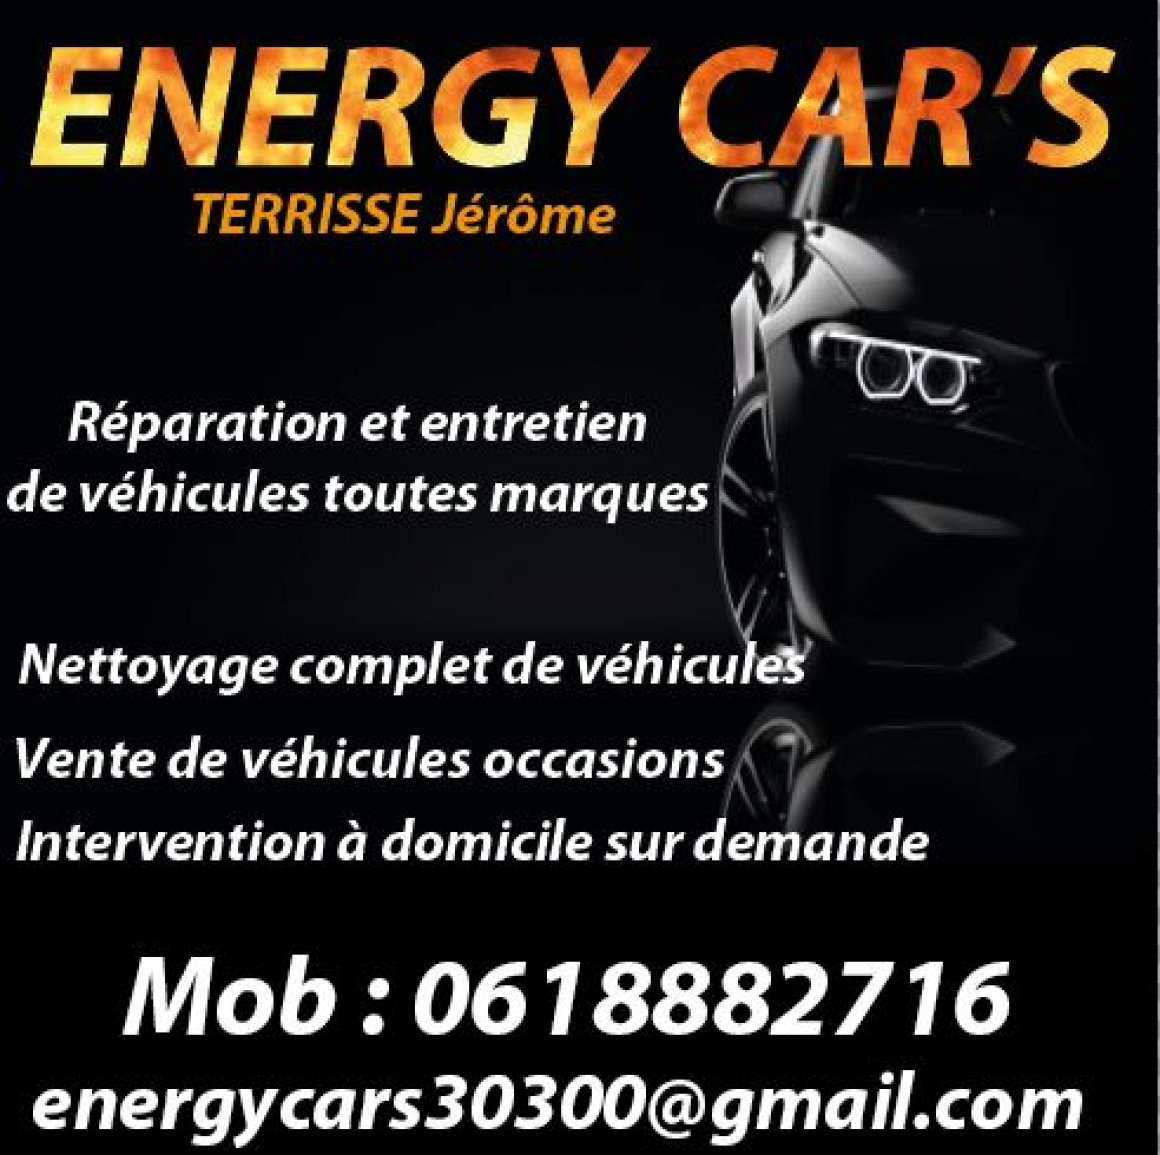 ENERGY CAR'S